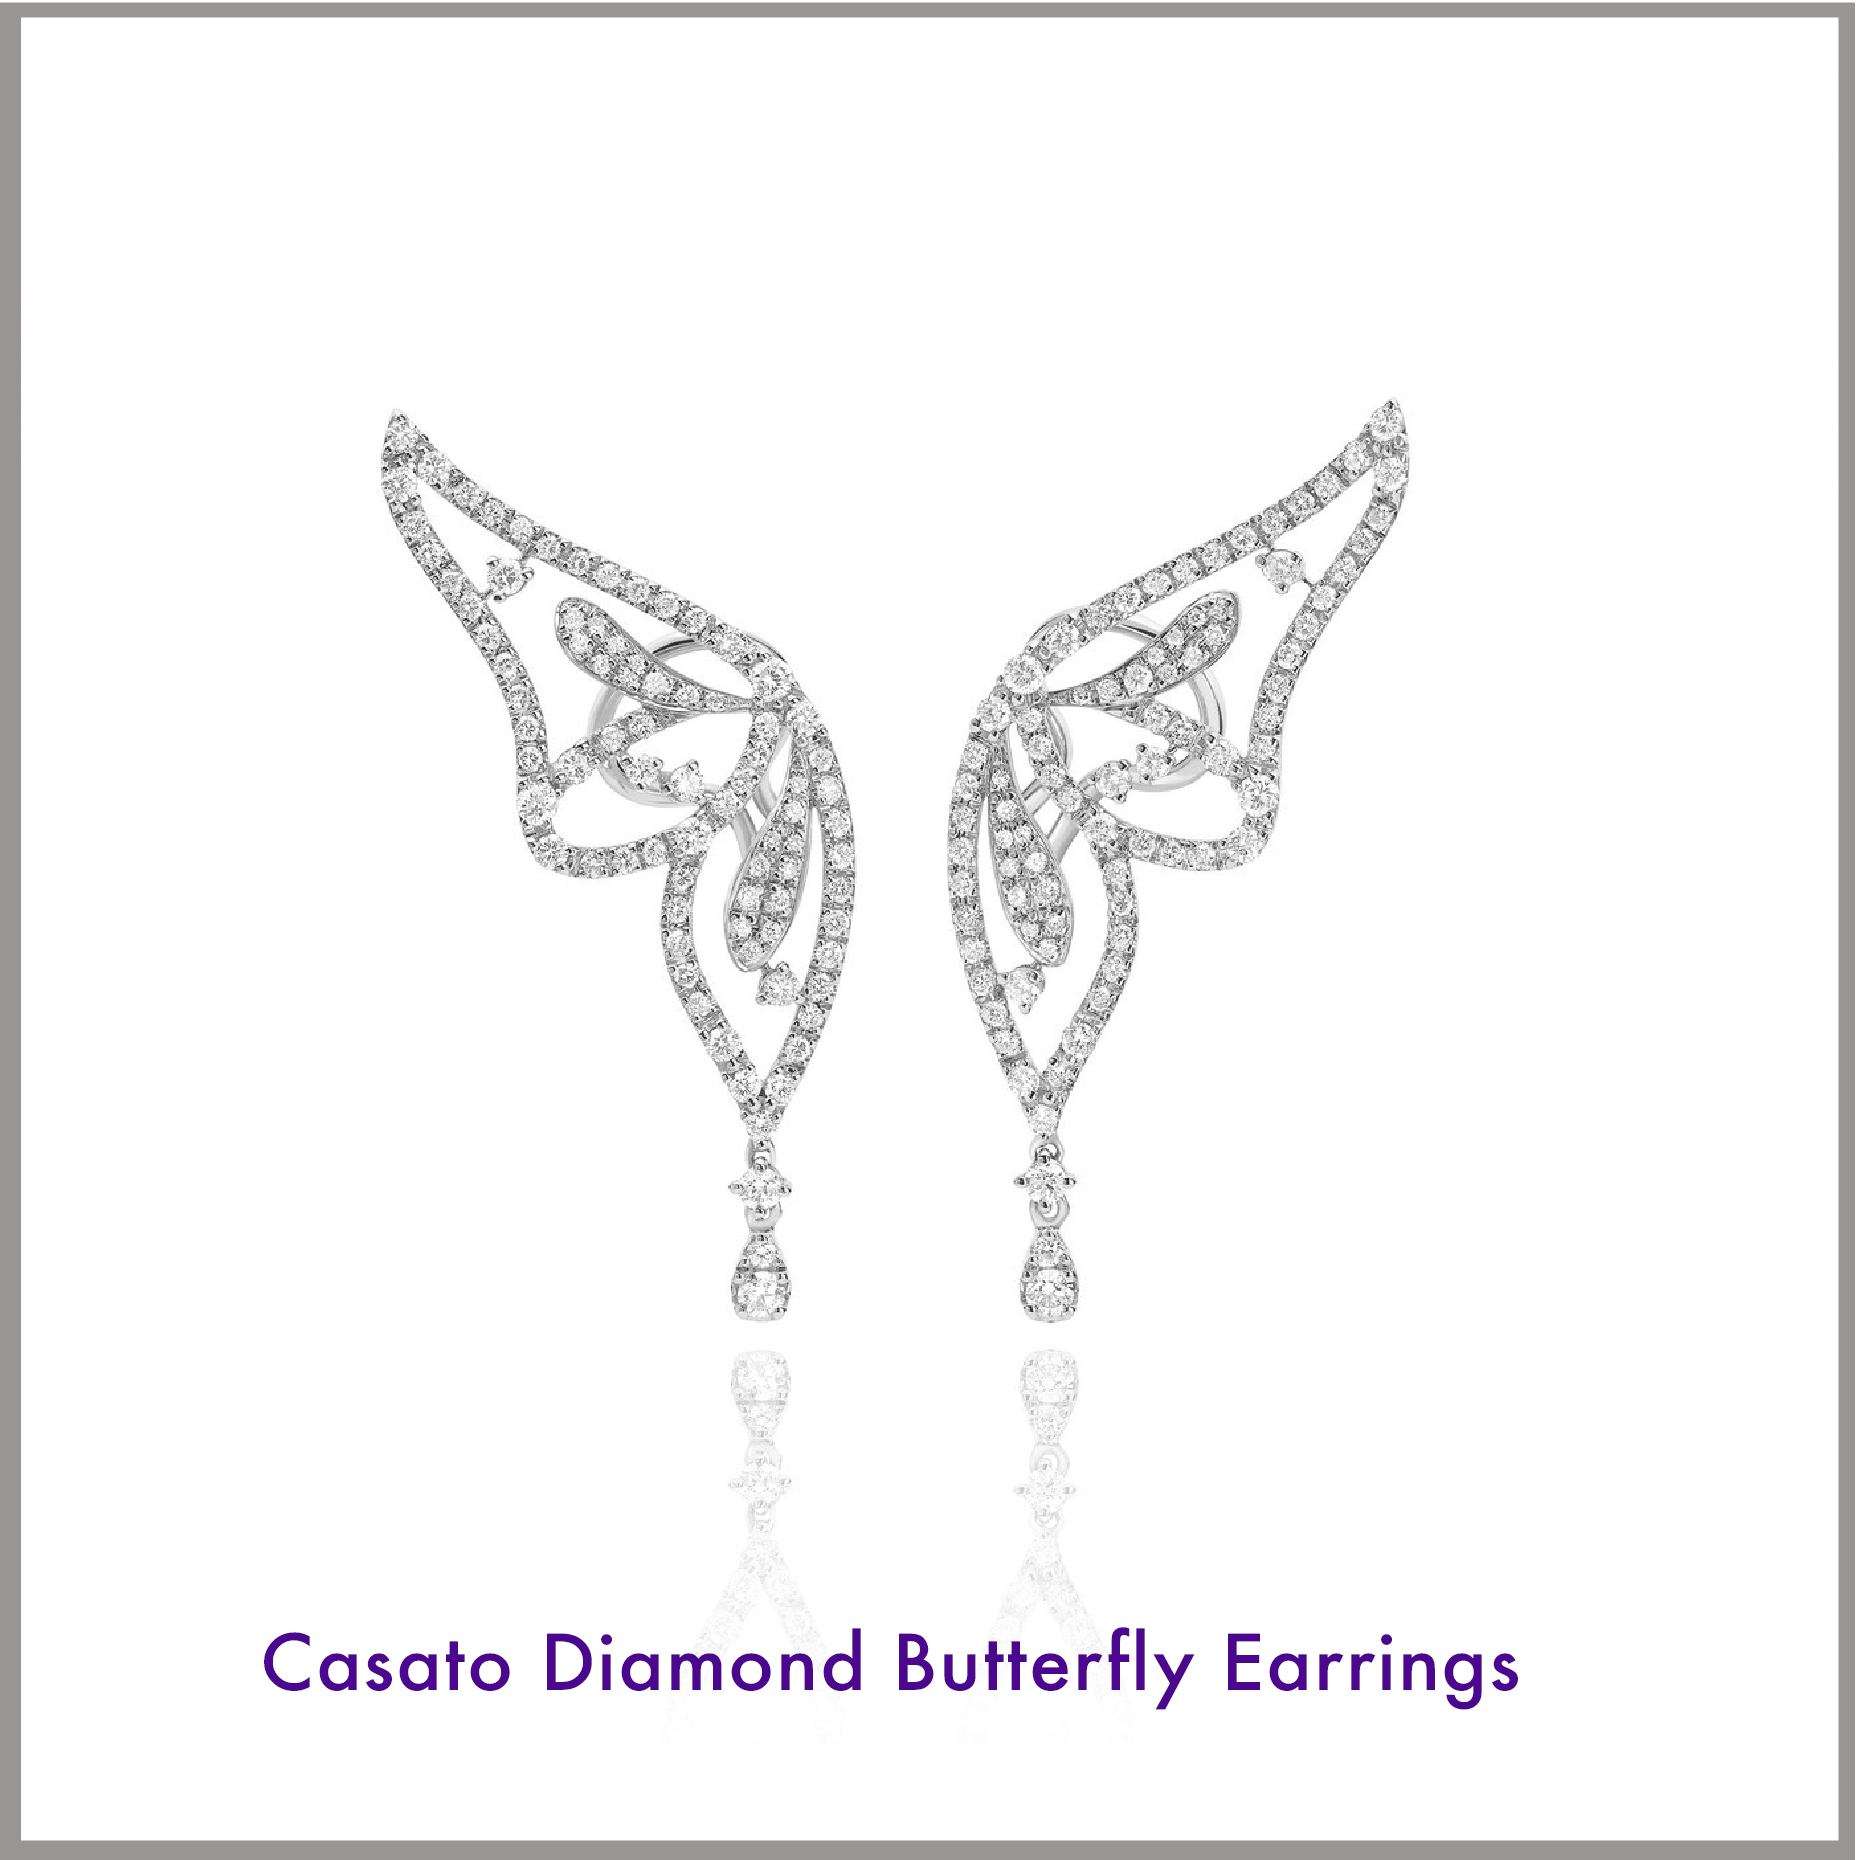 Casato earrings for Mom